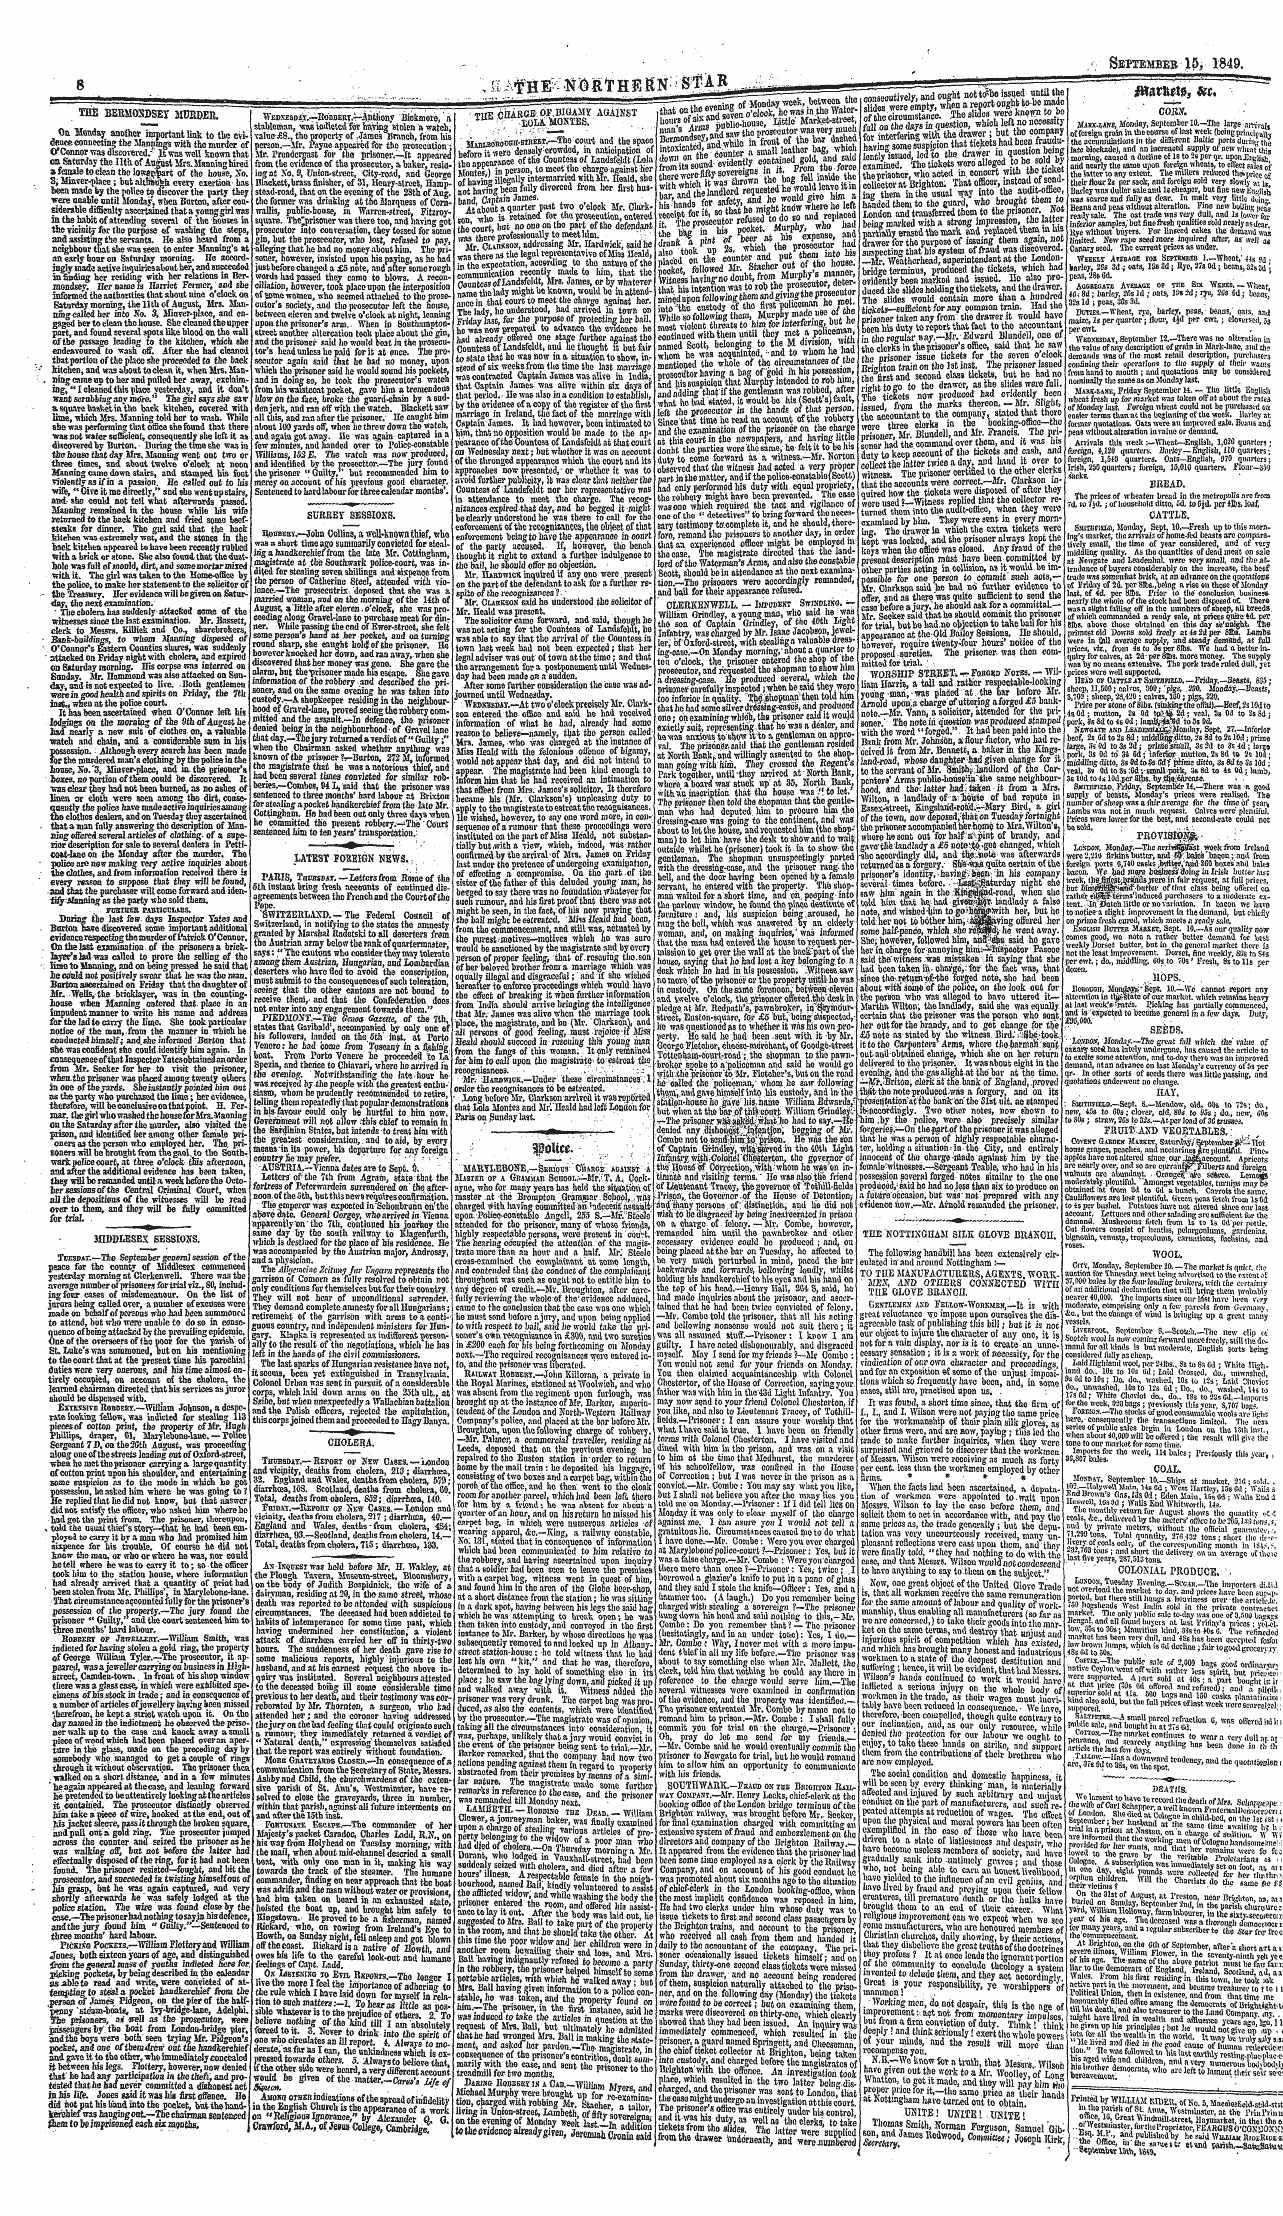 Northern Star (1837-1852): jS F Y, 3rd edition - ^ Ffiavm$ 3 &T